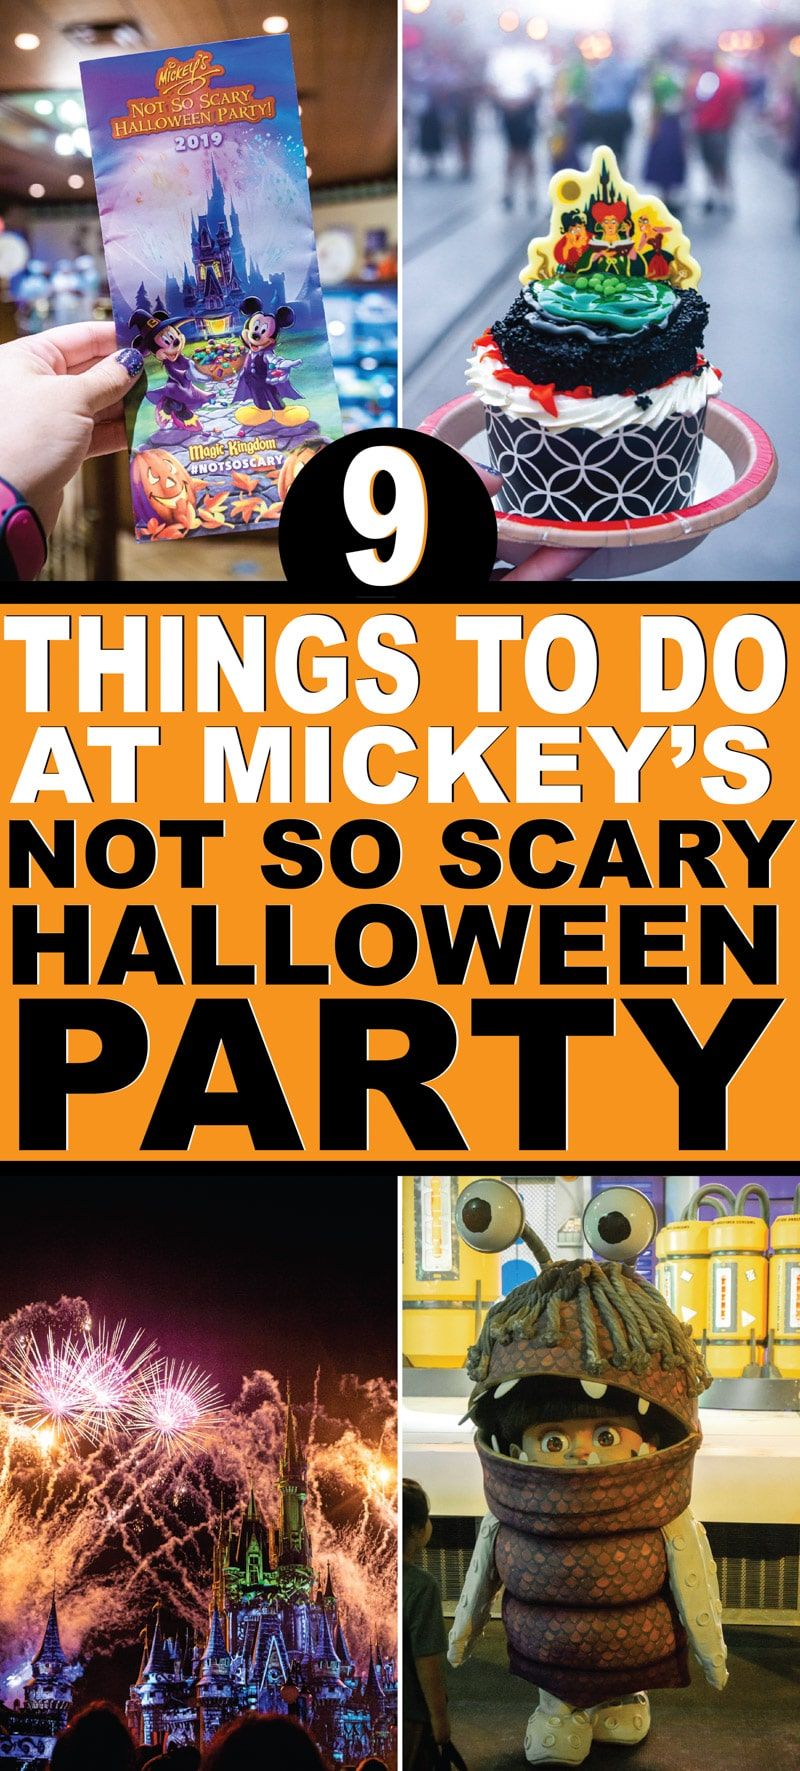 Крайното ръководство за не толкова страшното парти на Хелоуин на Мики 2019 в Disney World! Всичко от правилото за костюмите, коя храна и десерти са най-добри, с кого можете да се снимате, и разбира се някои самоделни костюми и ризи, които можете да направите за партито! И не забравяйте всички вътрешни съвети как да видите най-много герои и да получите най-много бонбони!